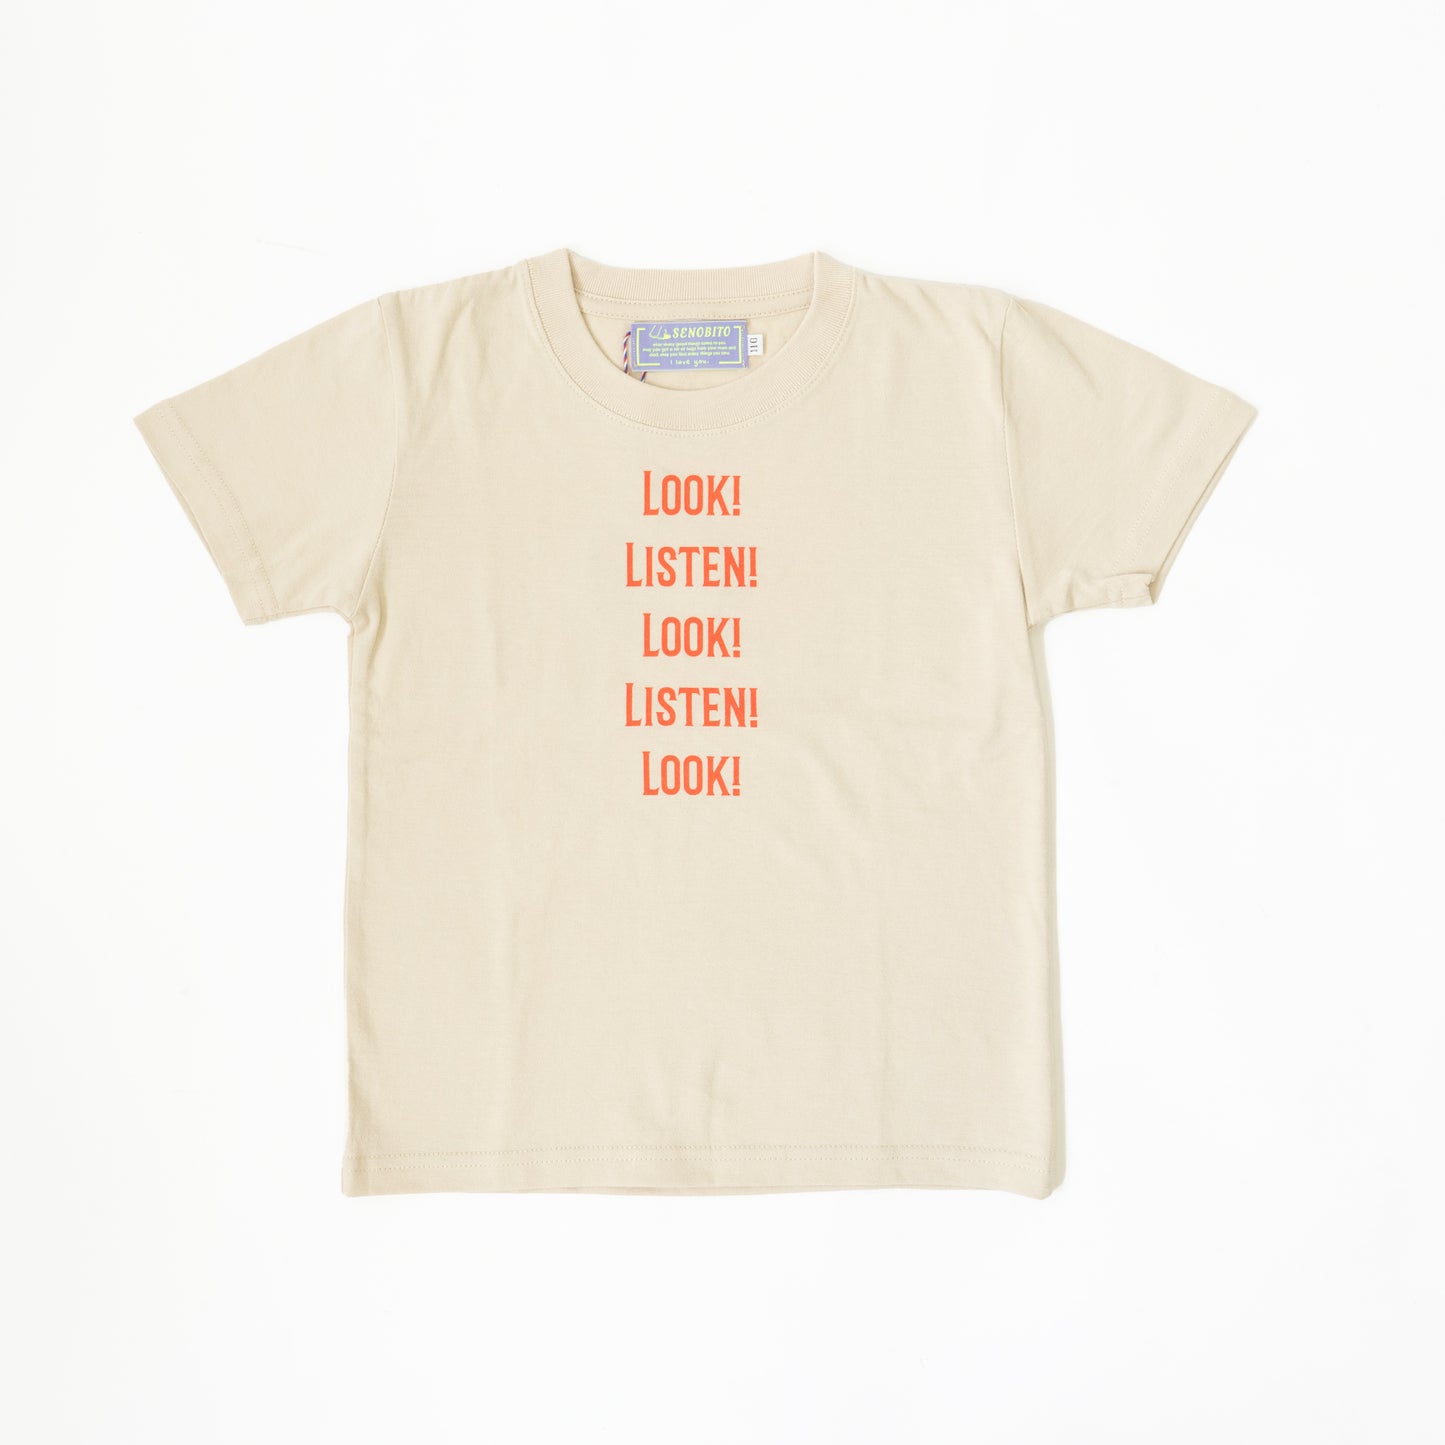 LOOK!LISTEN!T-shirt（見て！聞いて！Tシャツ）